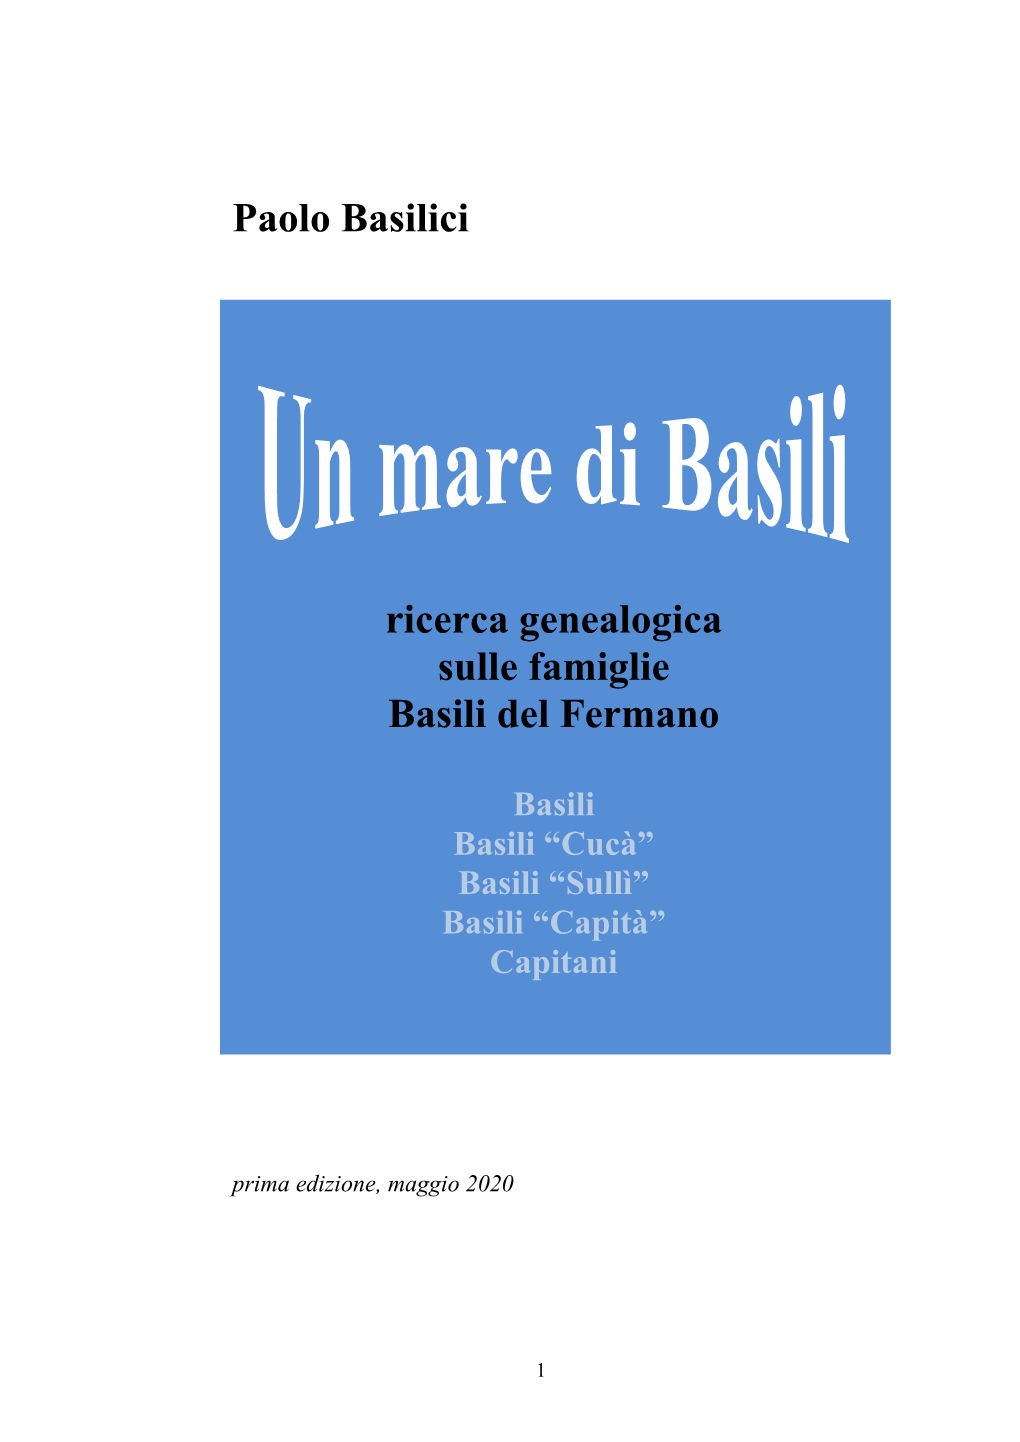 Paolo Basilici Ricerca Genealogica Sulle Famiglie Basili Del Fermano